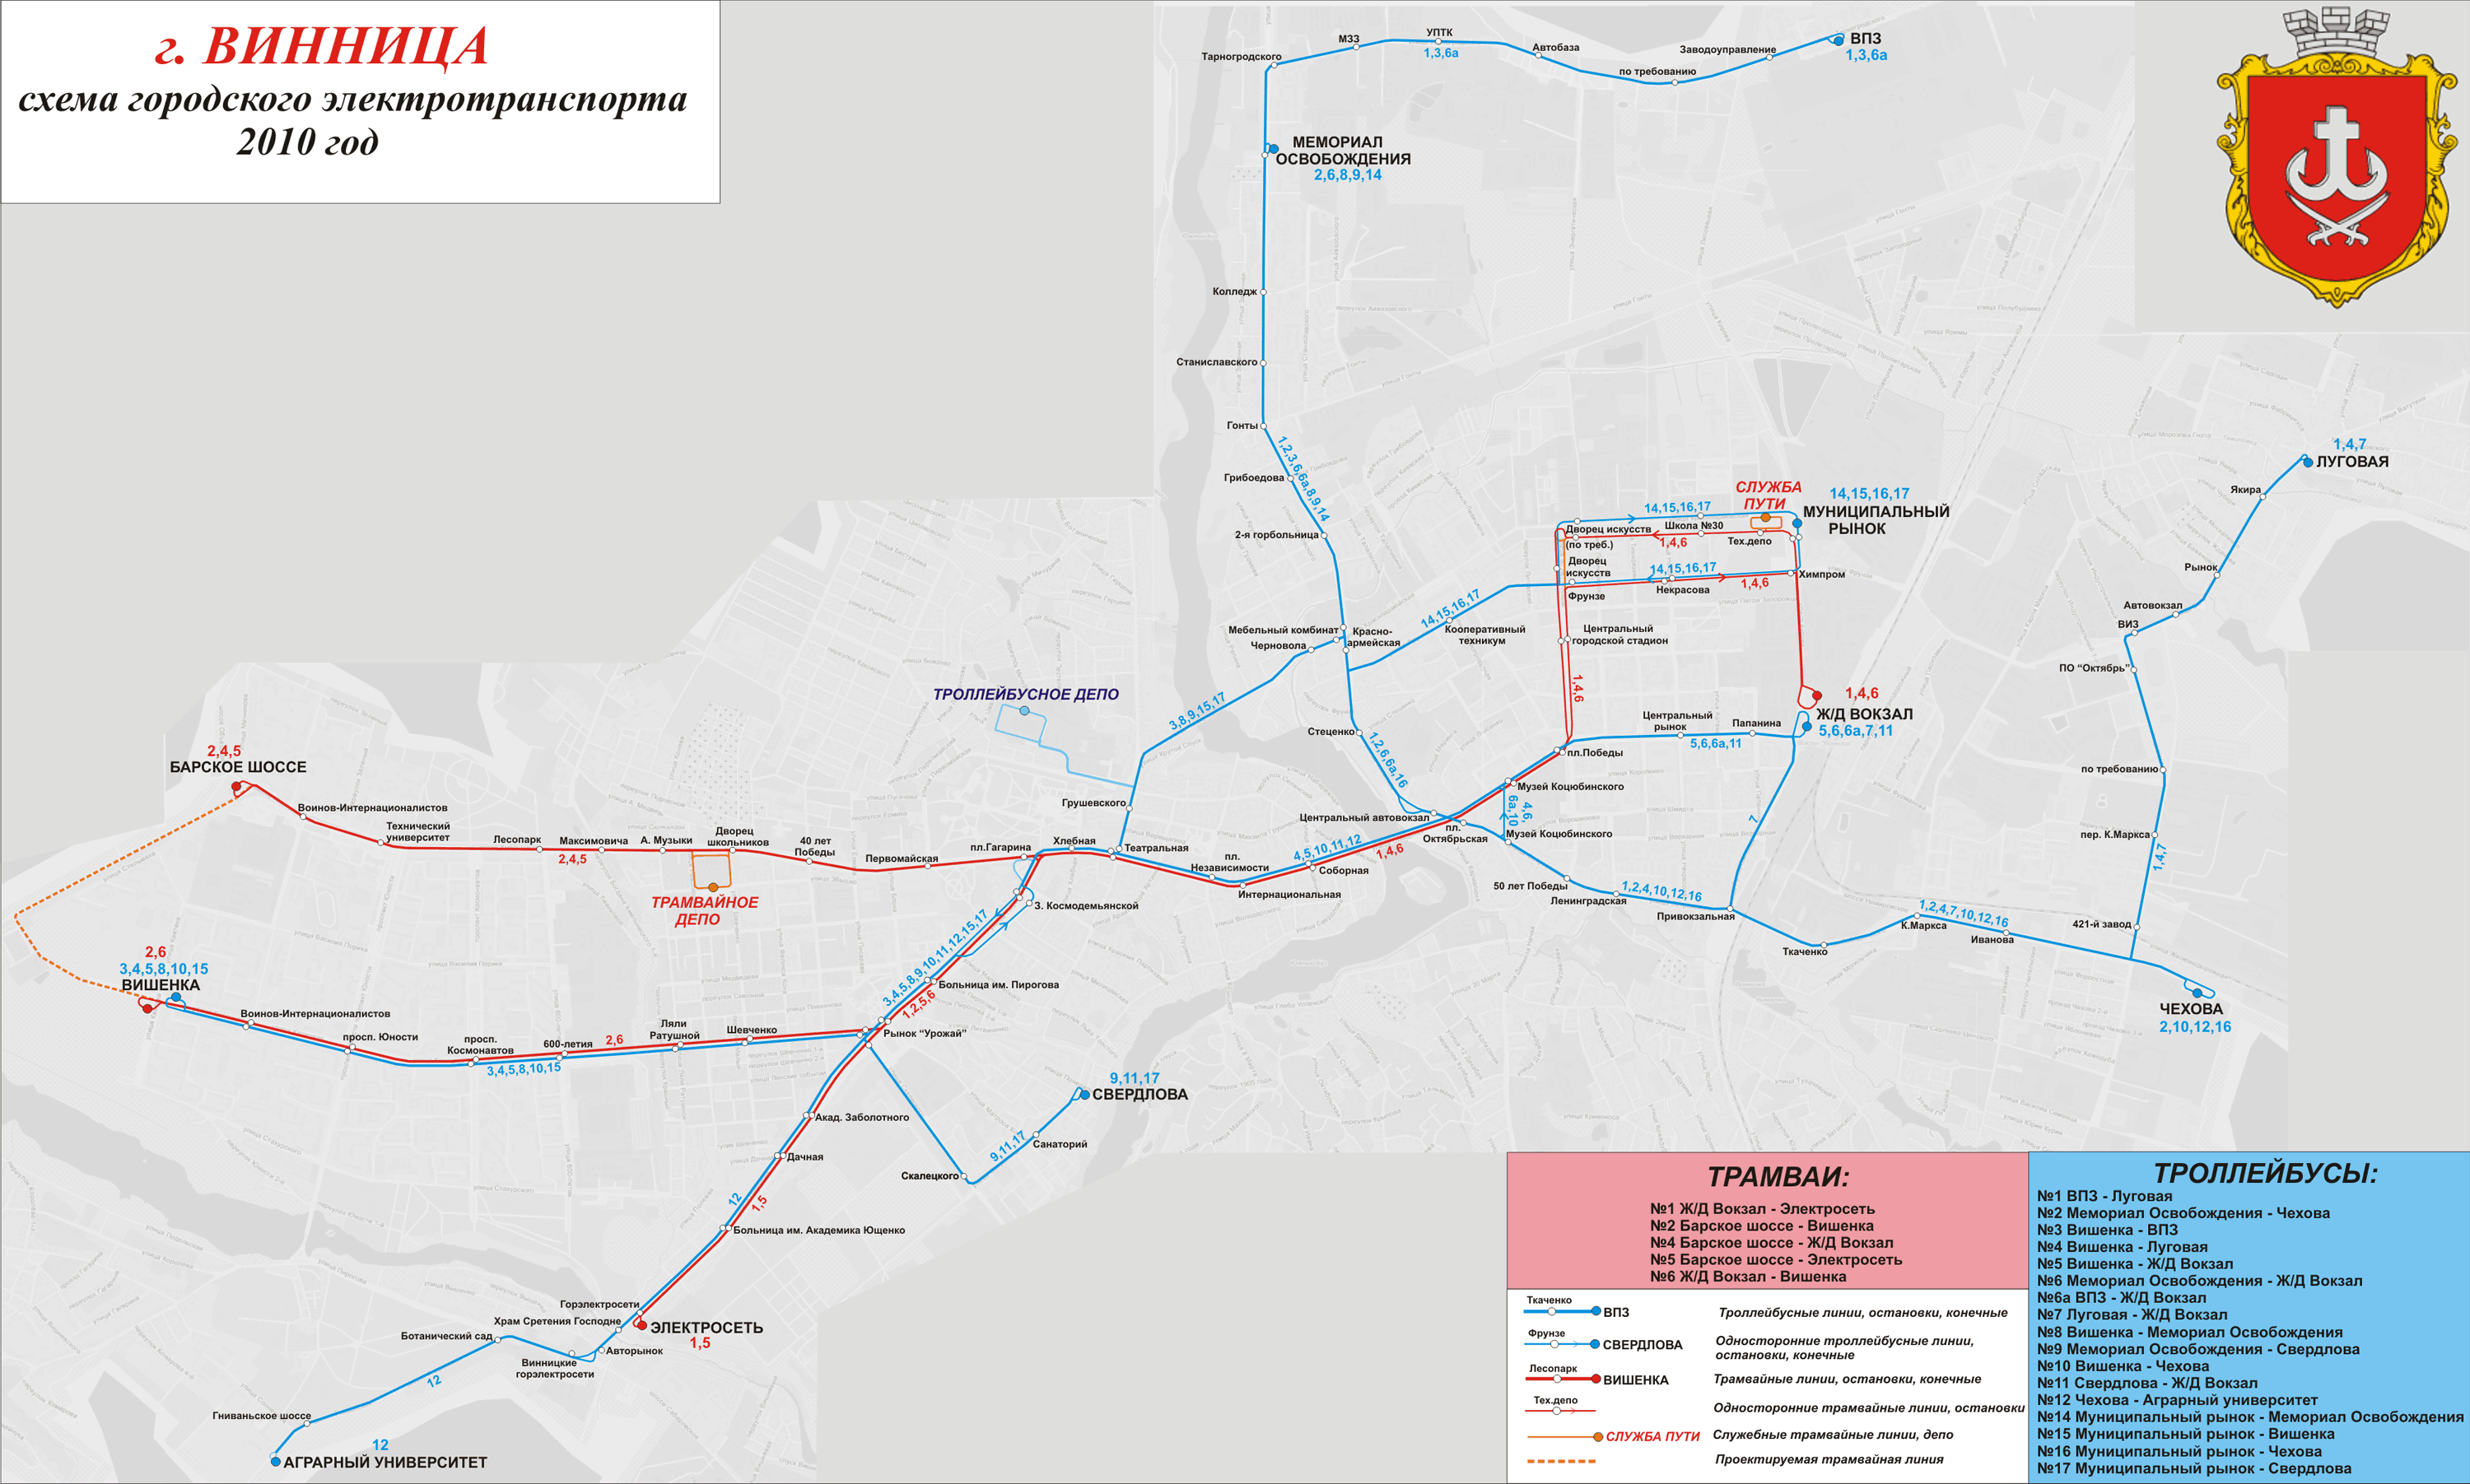 Vinnytsia — Maps